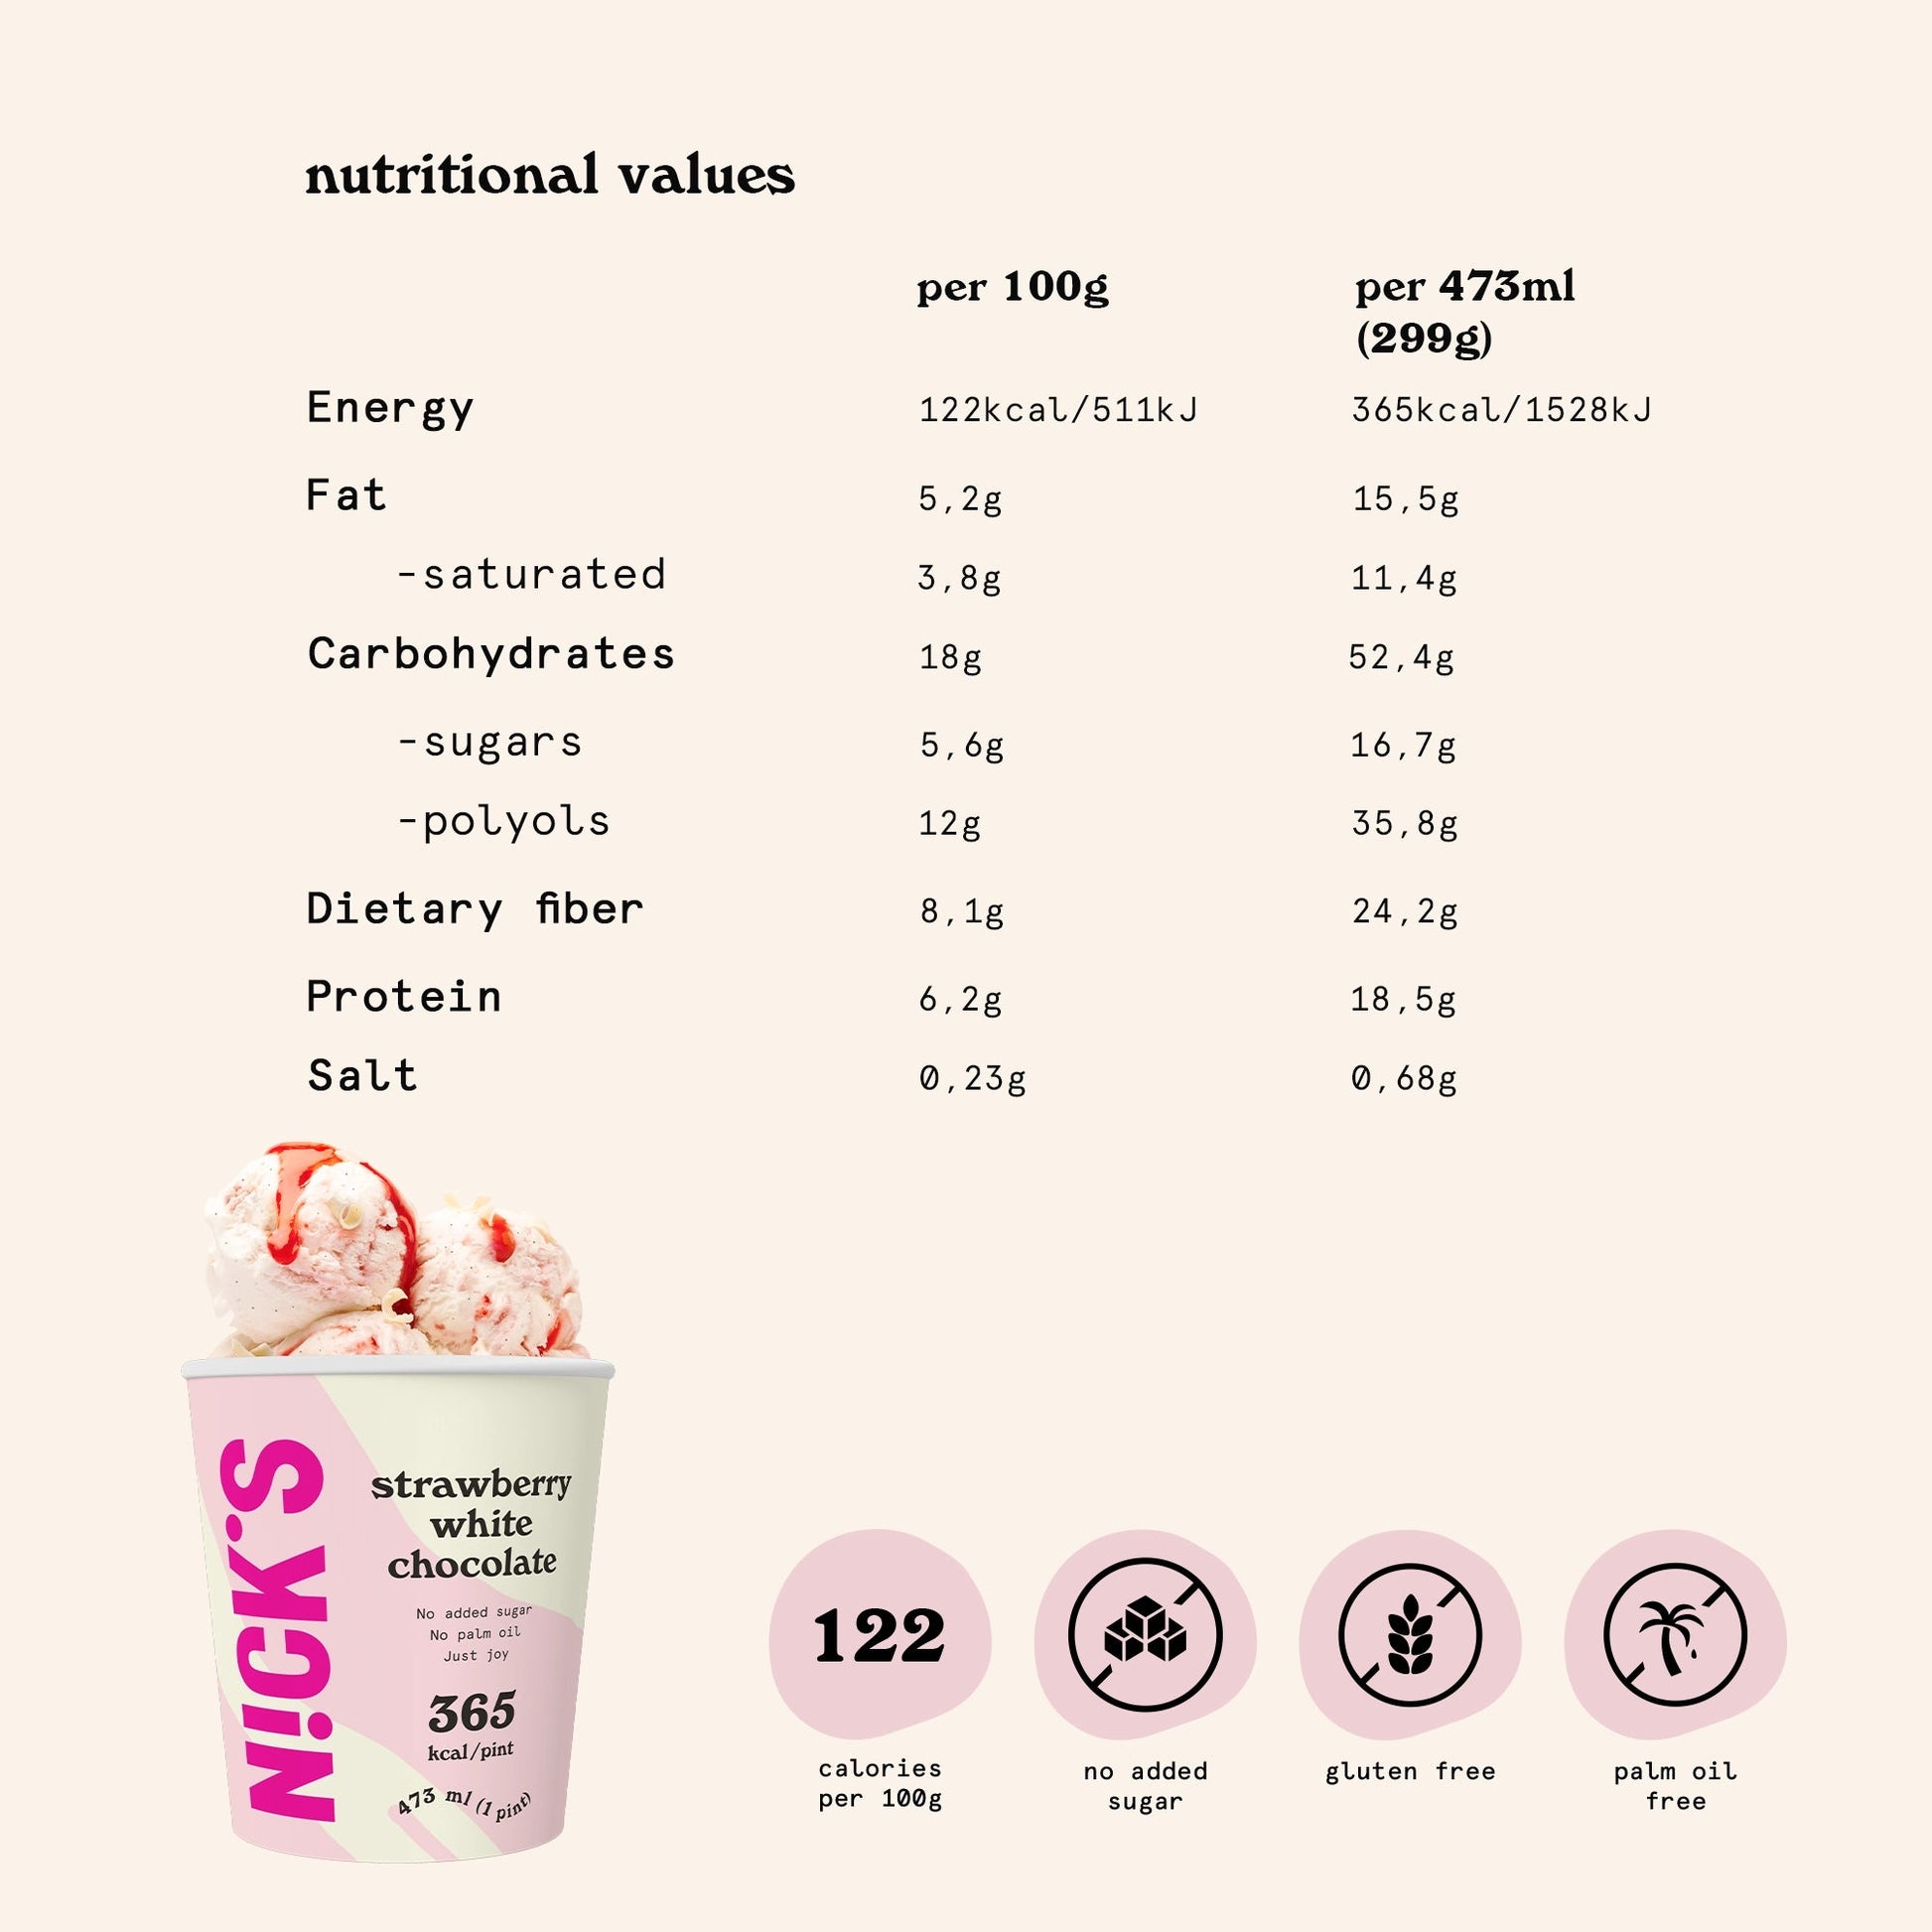 NICK'S jäätis-Jäätis "strawberry white chocolate" 8 x 473ml - njom.ee